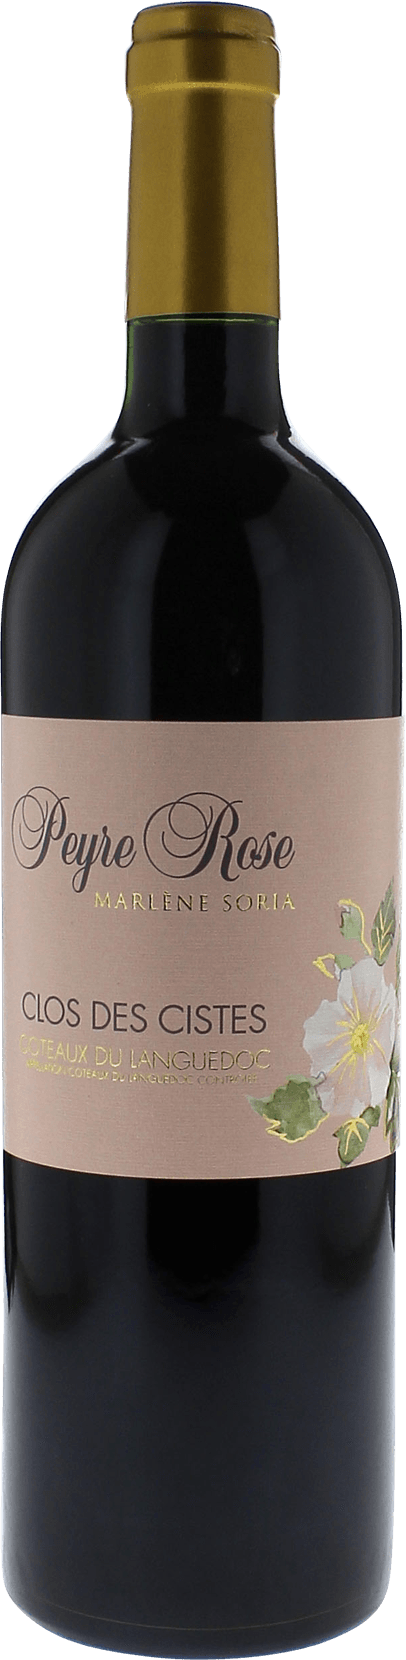 Peyre rose clos des cistes 2014  Vins de France, Languedoc